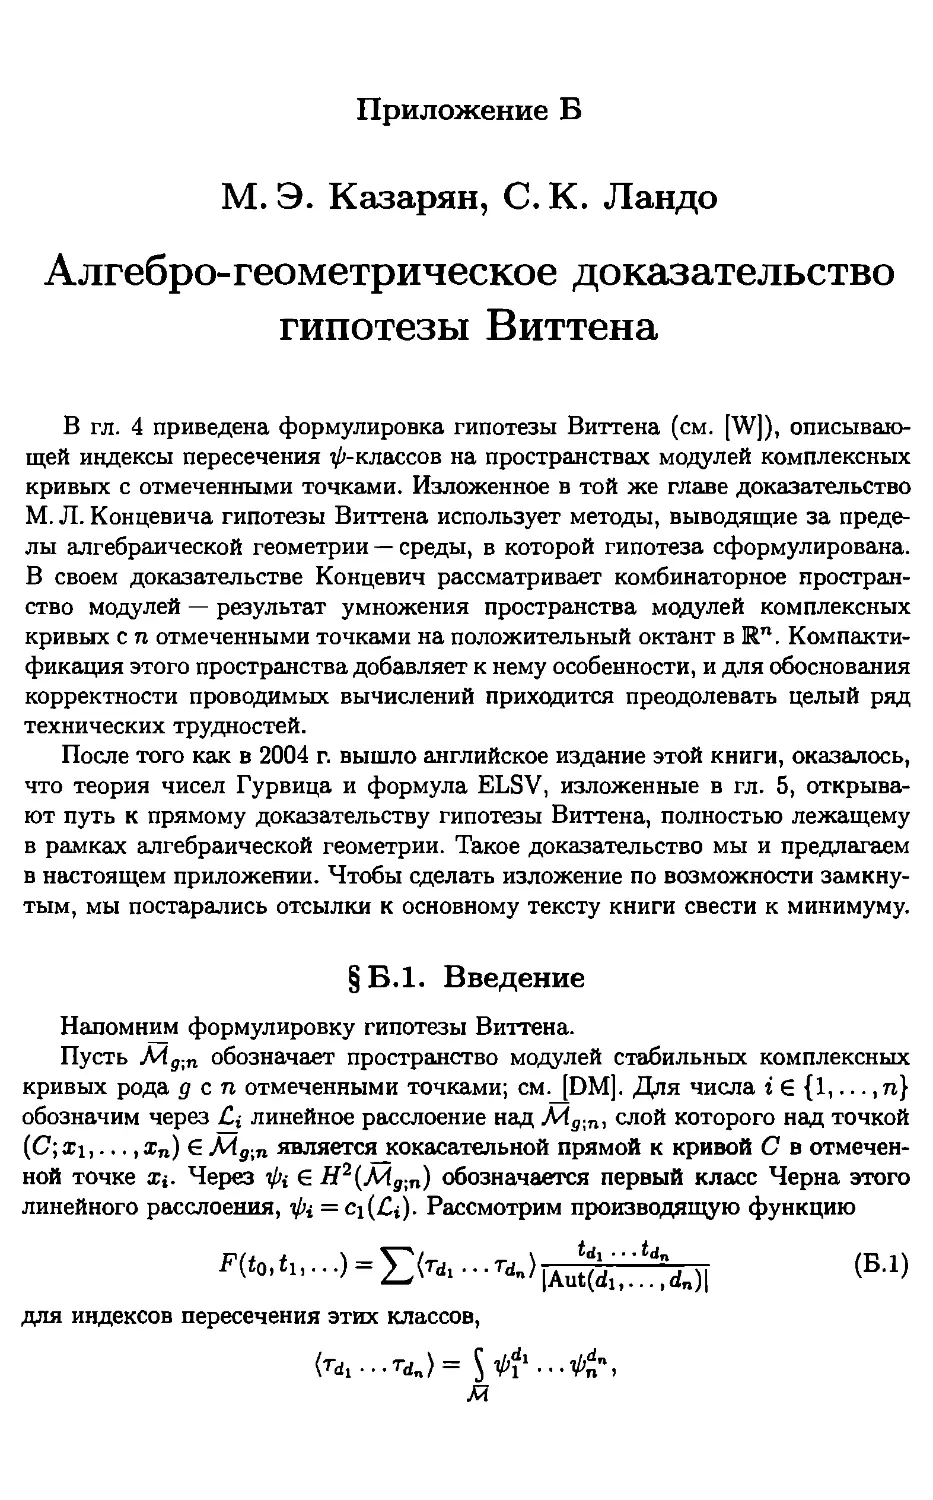 Приложение Б. М. Э. Казарян, С. К. Ландо. Алгебро-геометрическое доказательство гипотезы Витрина